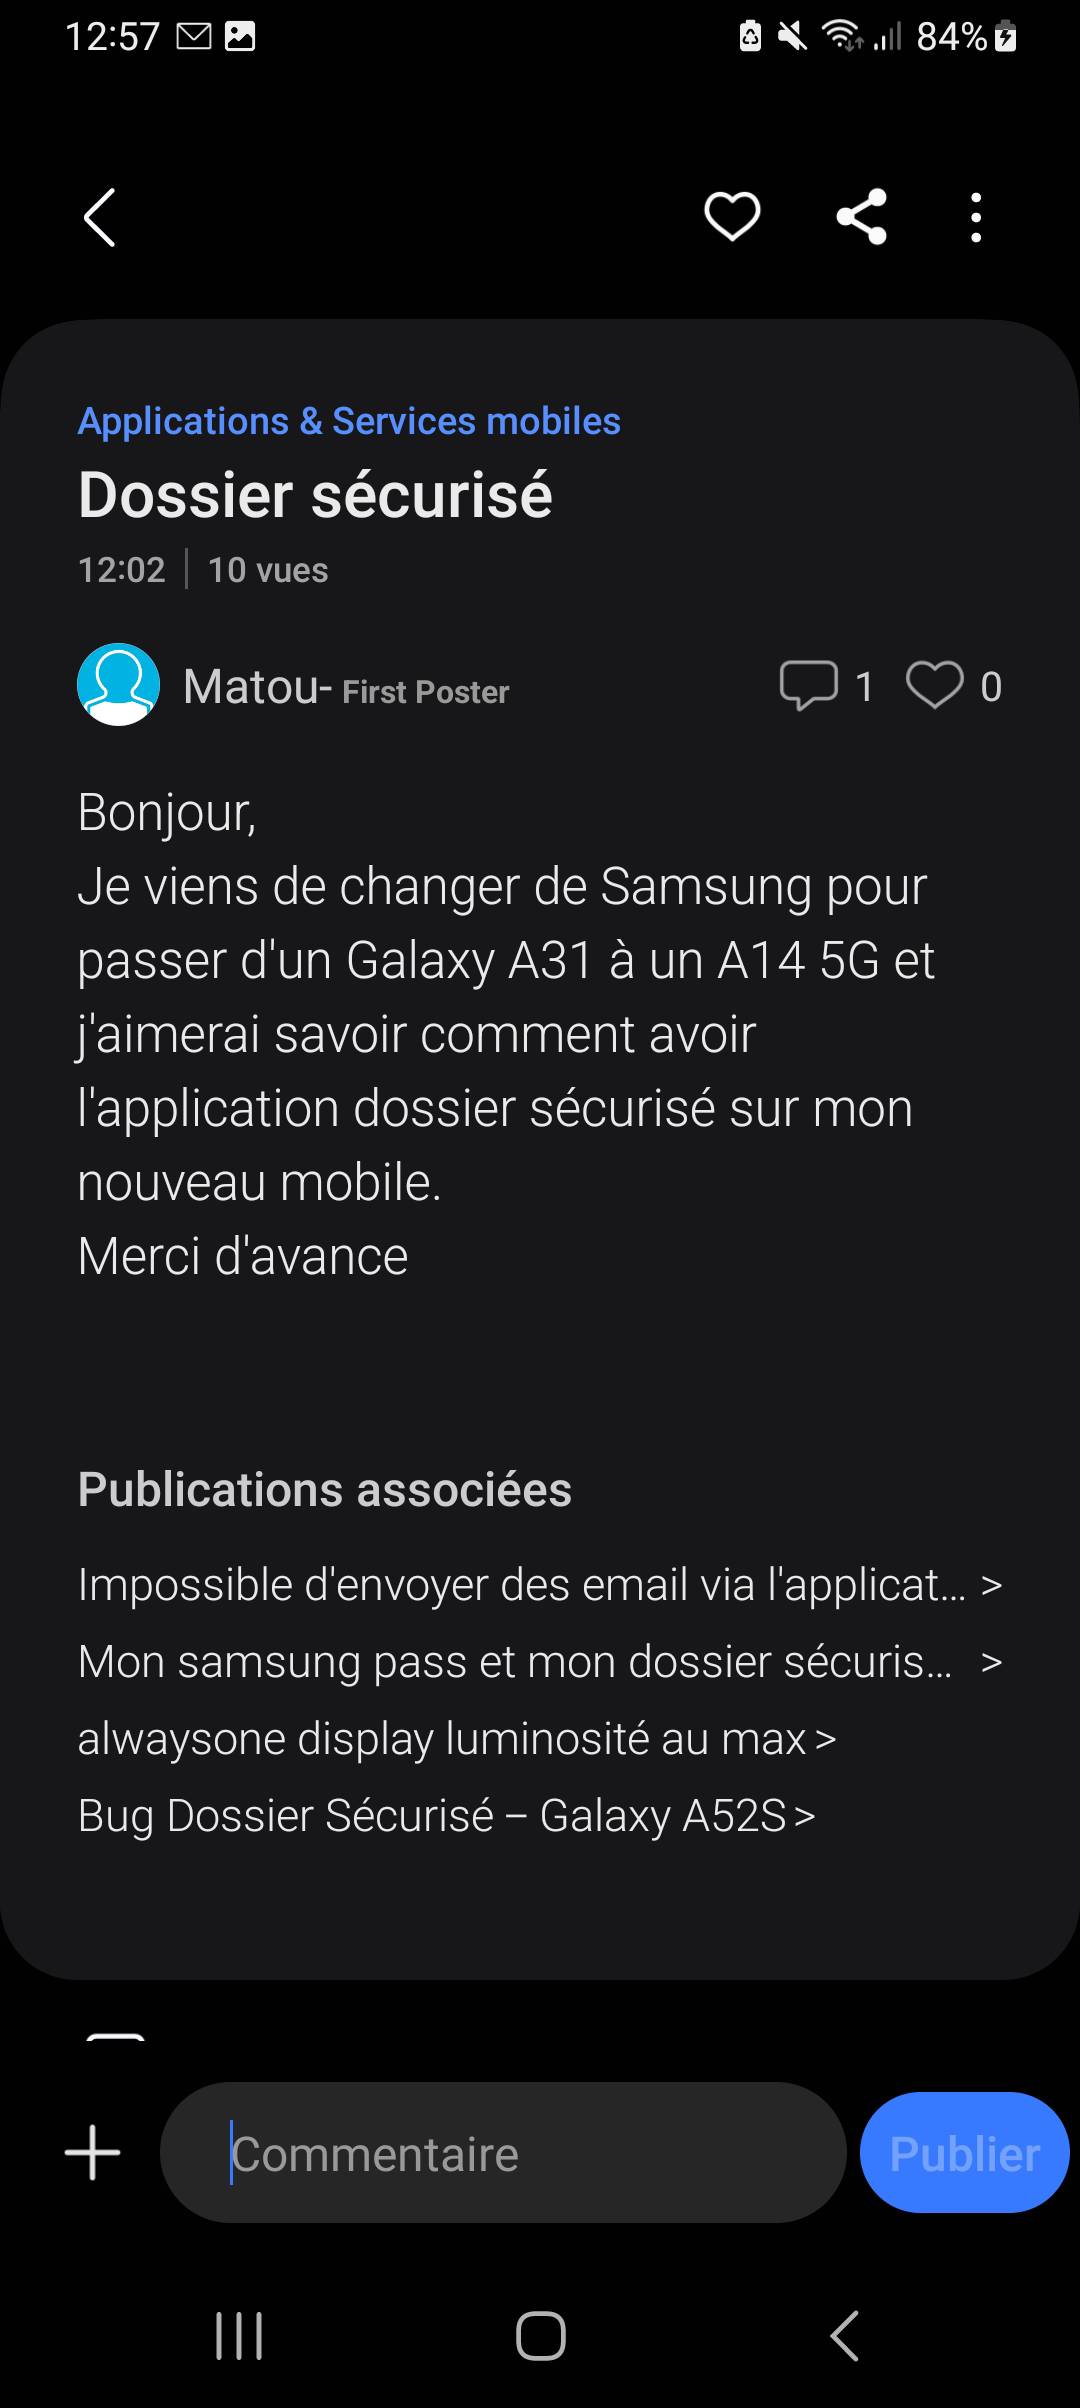 Dossier sécurisé - Samsung Community